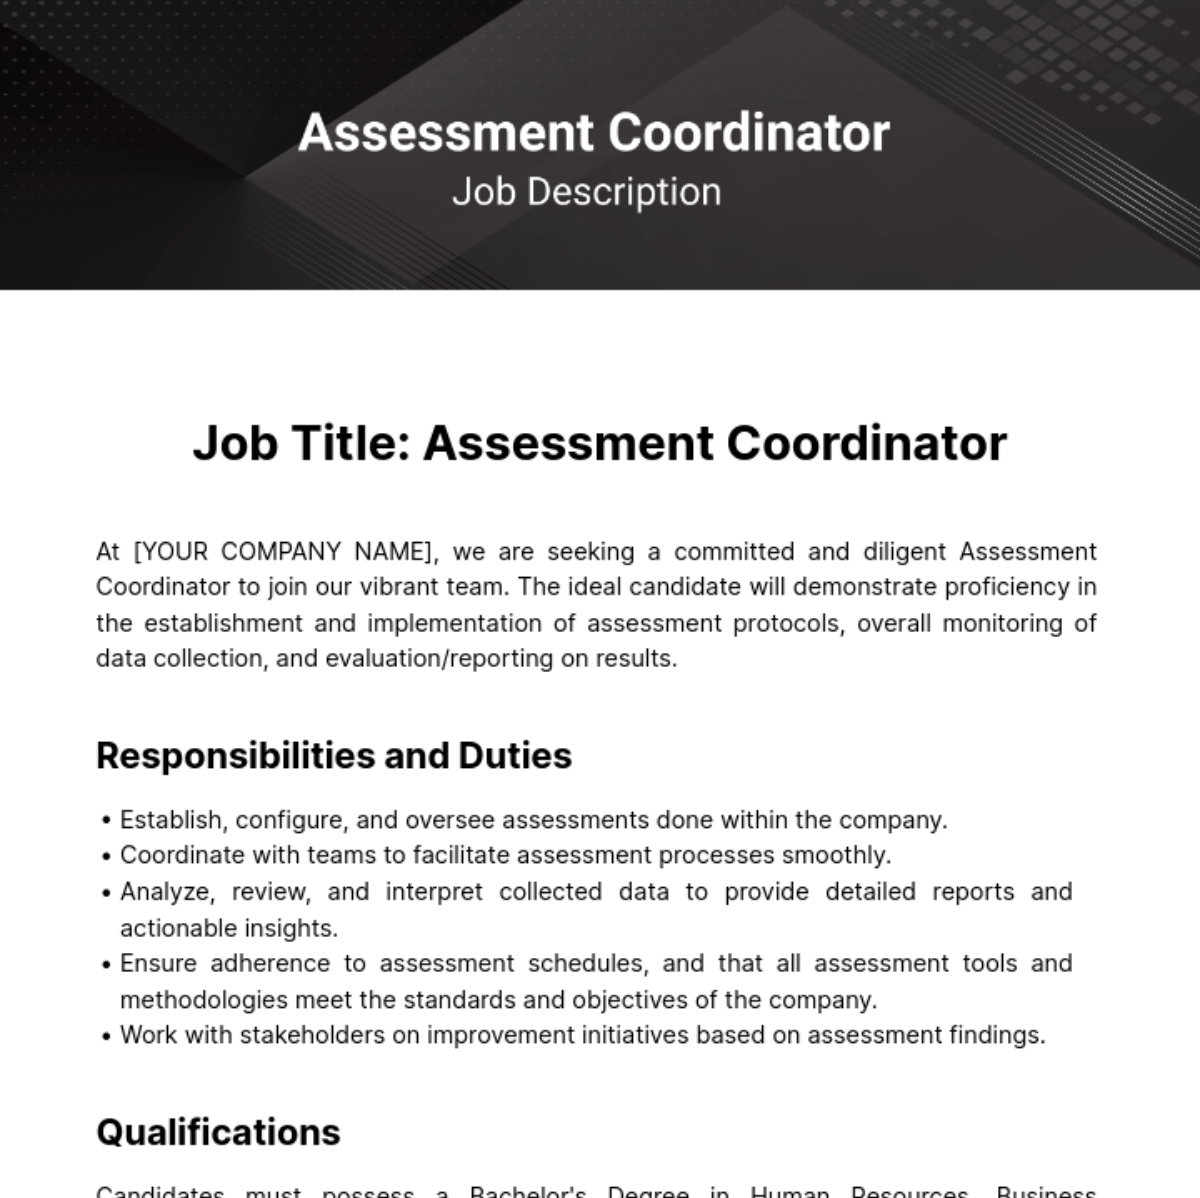 Assessment Coordinator Job Description Template